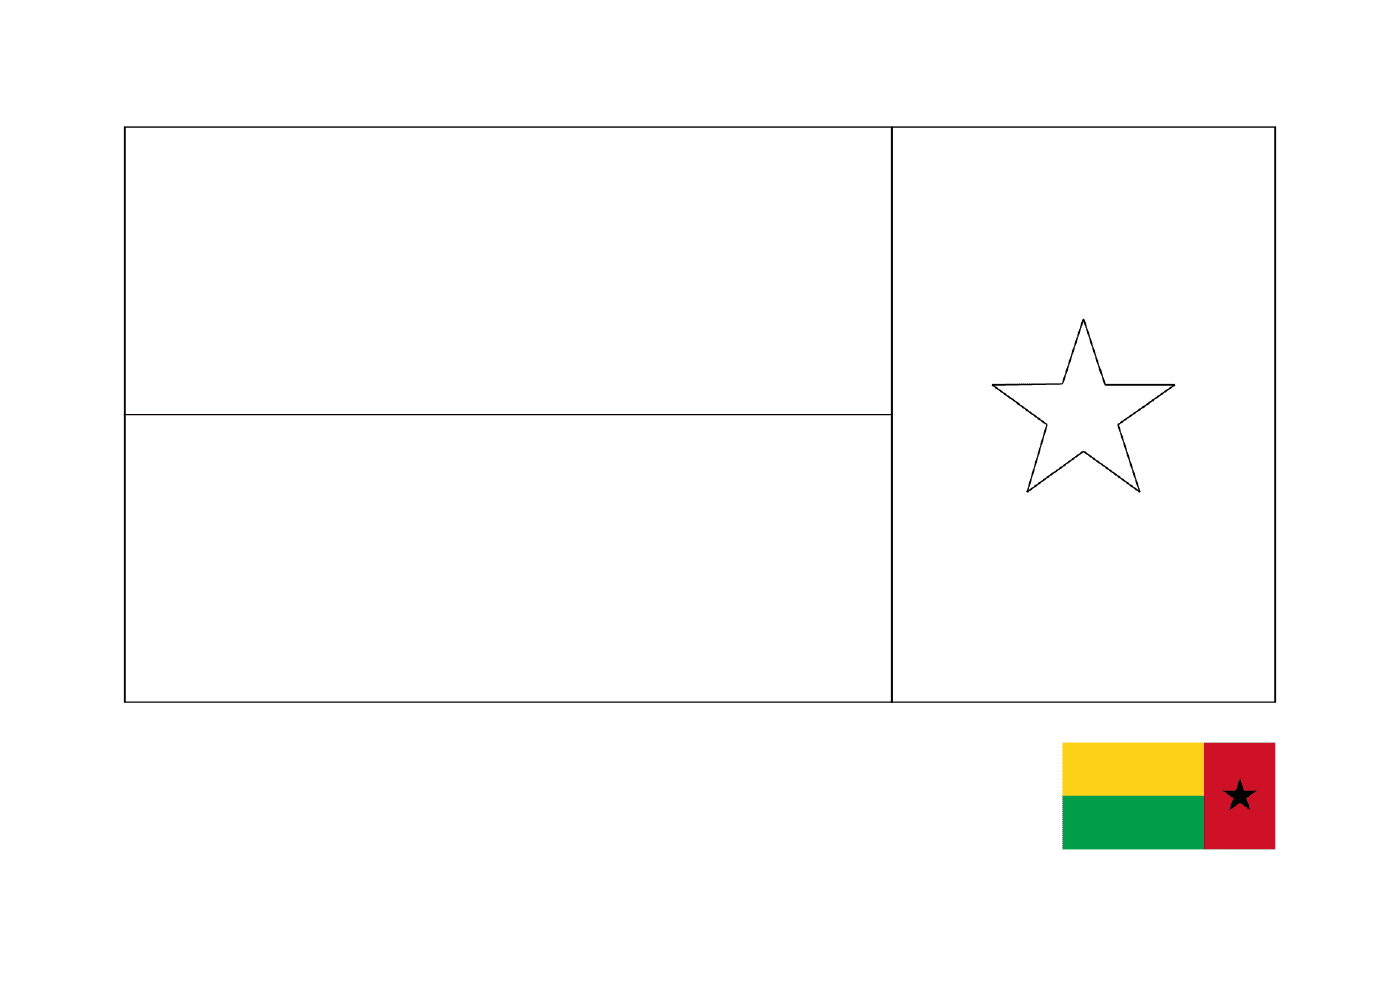  علم غينيا 